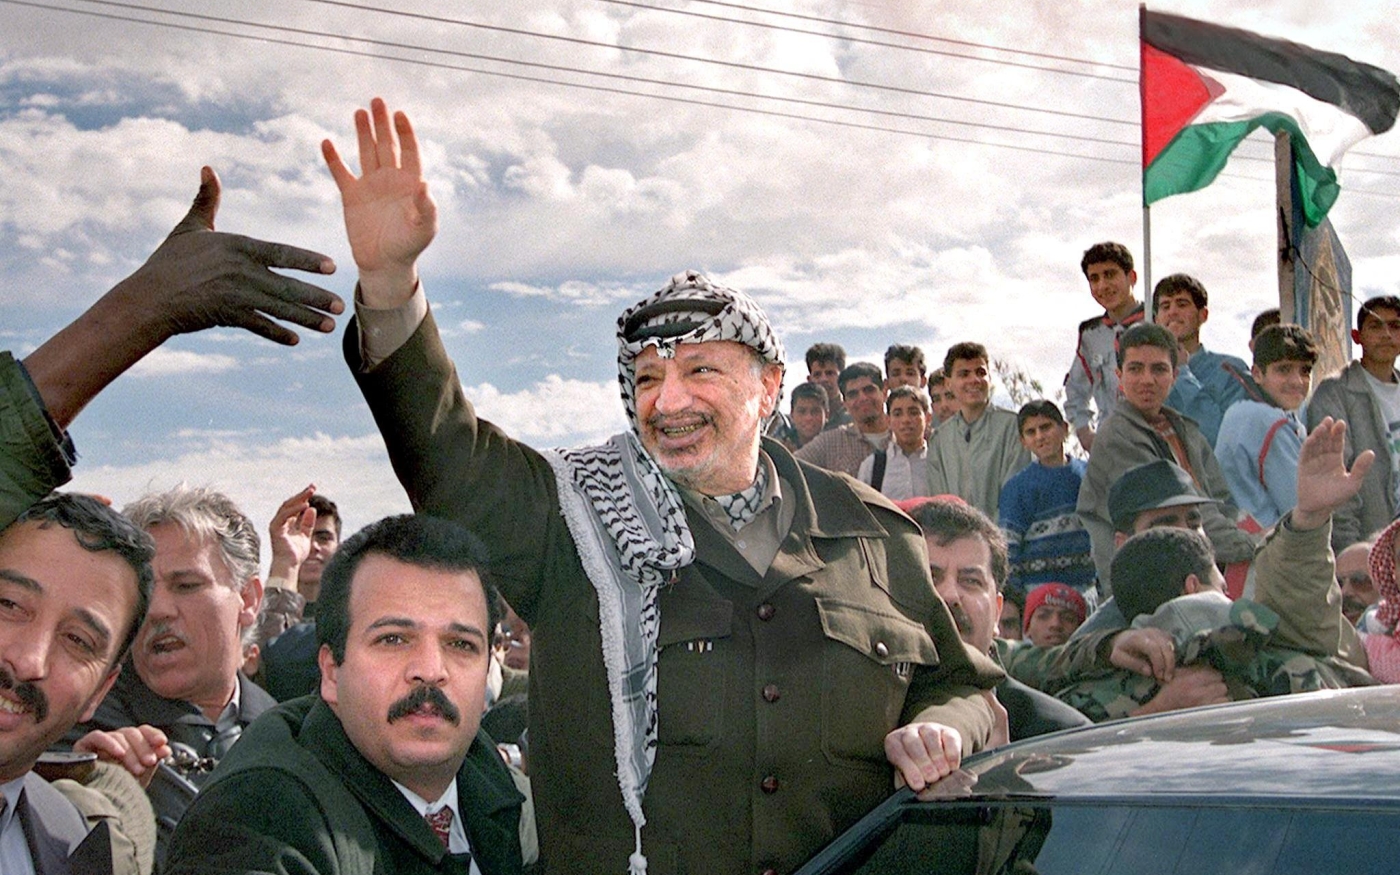 Le président palestinien de l’époque, Yasser Arafat, salue la foule qui s’est rassemblée pour l’accueillir à Rafah, dans la bande de Gaza, le 27 février 1998 (AFP/Fayez Nureldine)